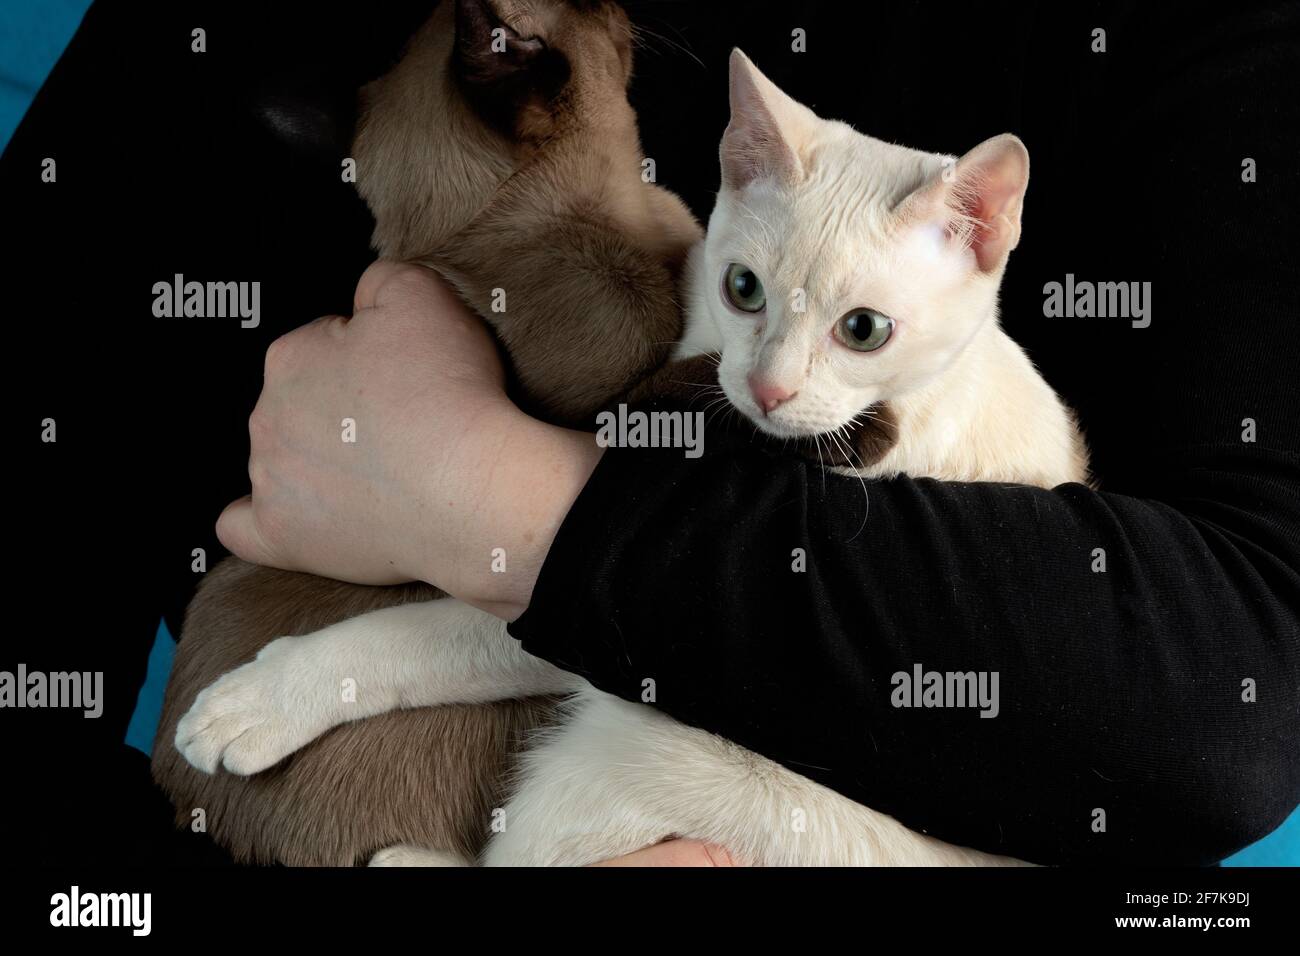 Zwei junge, reinrassige tonkinese-Katzen aus Rehkitz und Robbe mink Farben  in weiblichen Händen auf dem dunkelschwarzen Hintergrund Stockfotografie -  Alamy